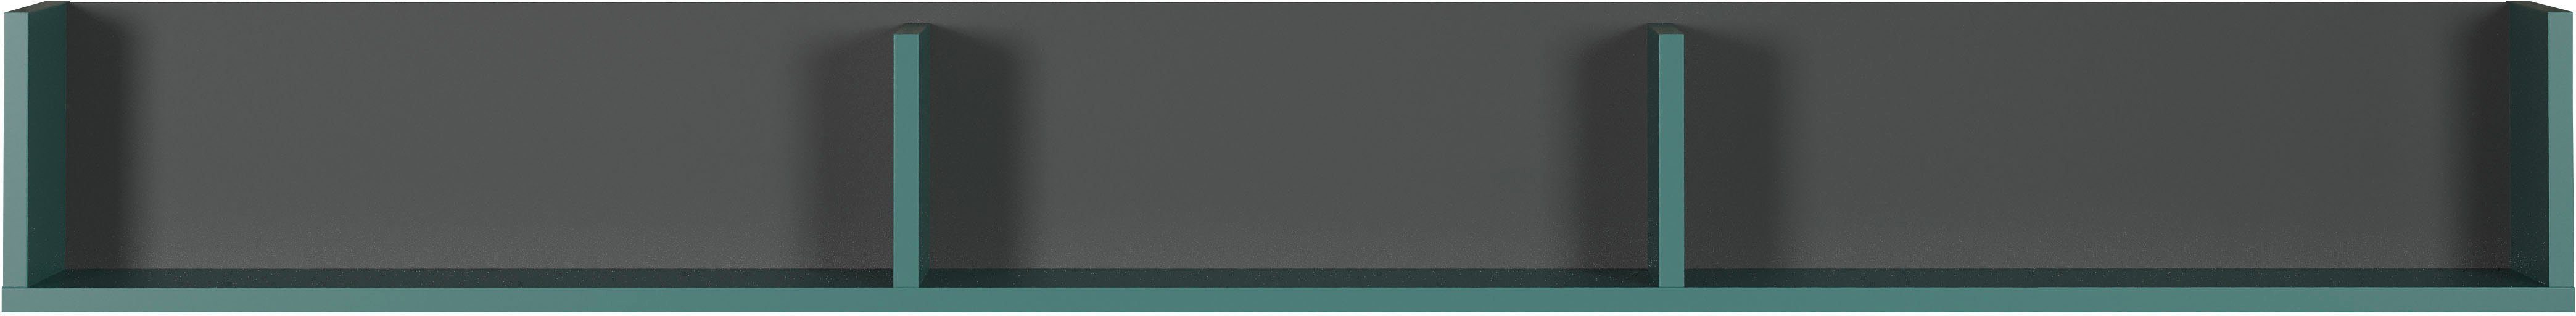 andas Wandboard Mikkeline, 1-tlg., zweifarbiges Regal, 3 Fächer für Wandbefestigung (Breite 163 cm)